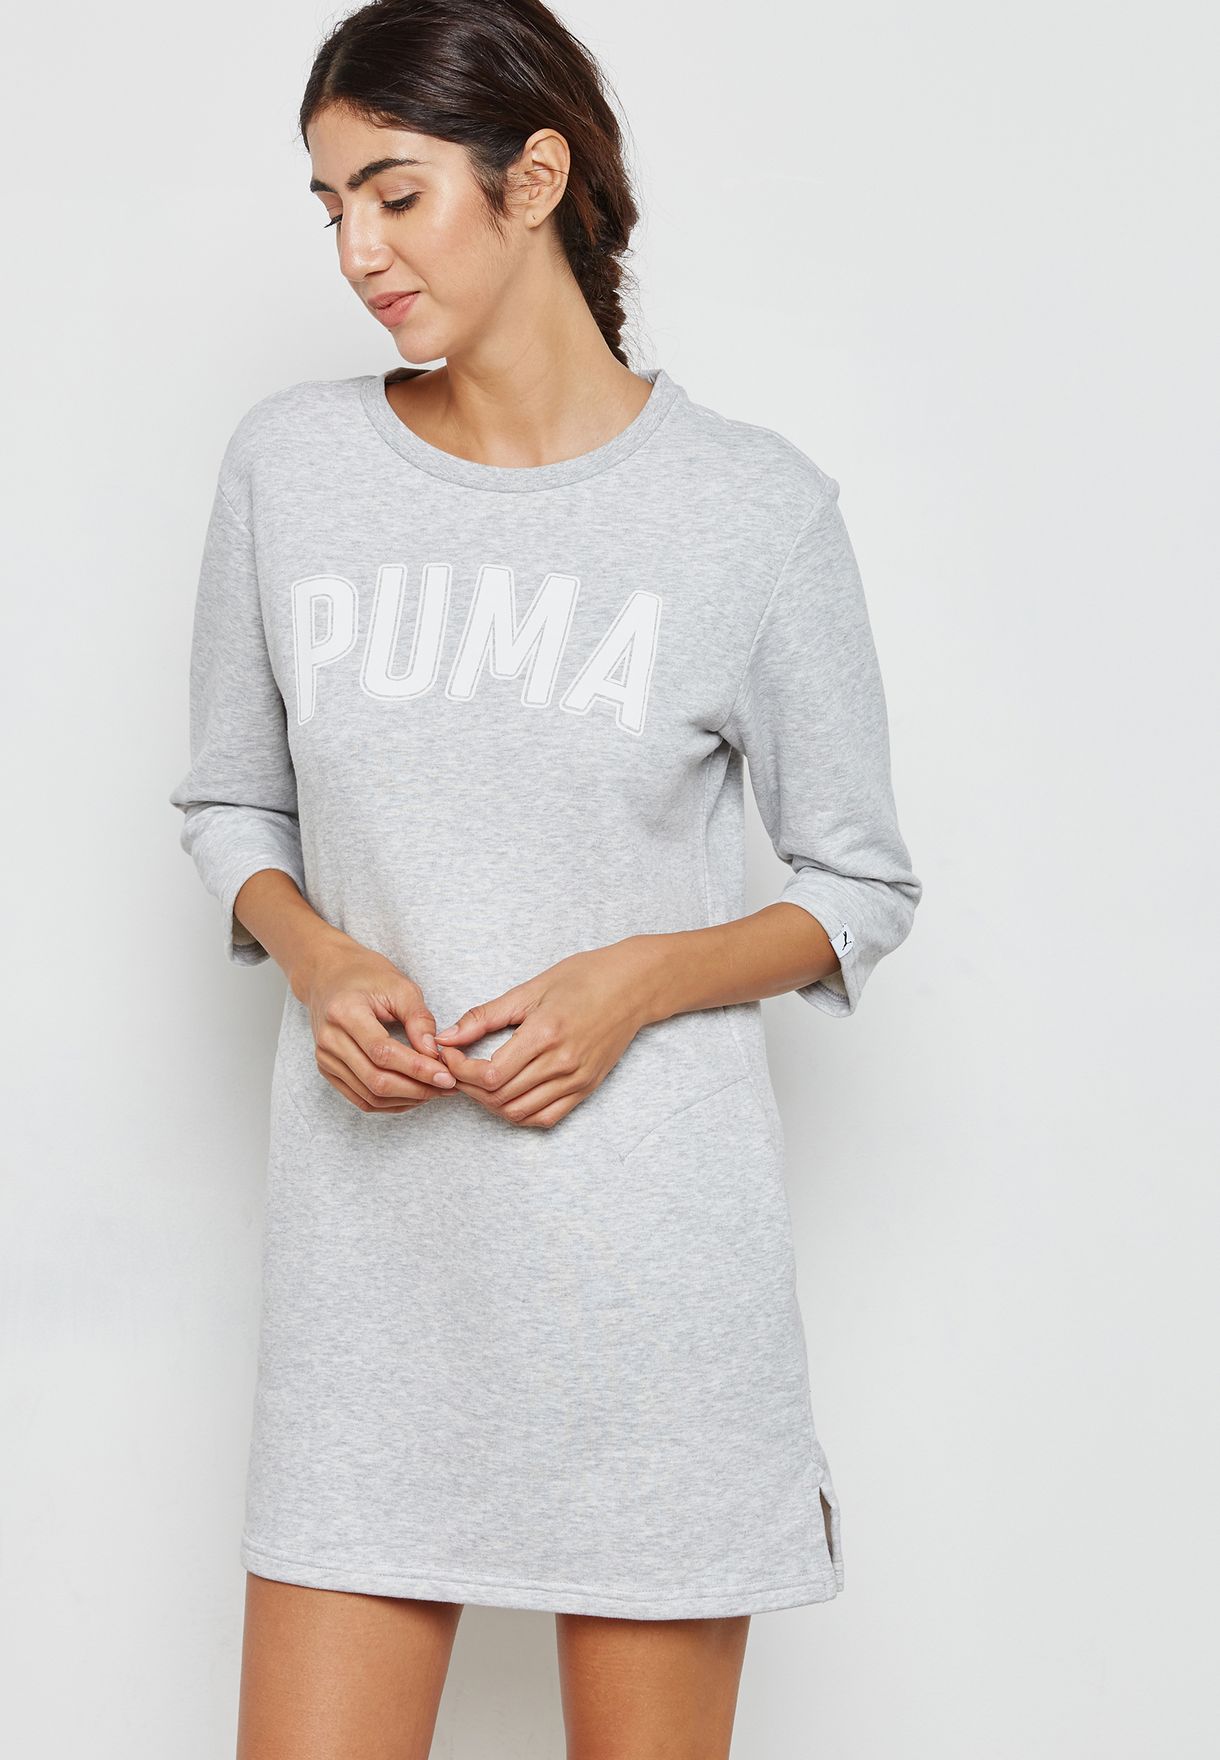 Buy Puma Grey Athletic Sweat Dress for 